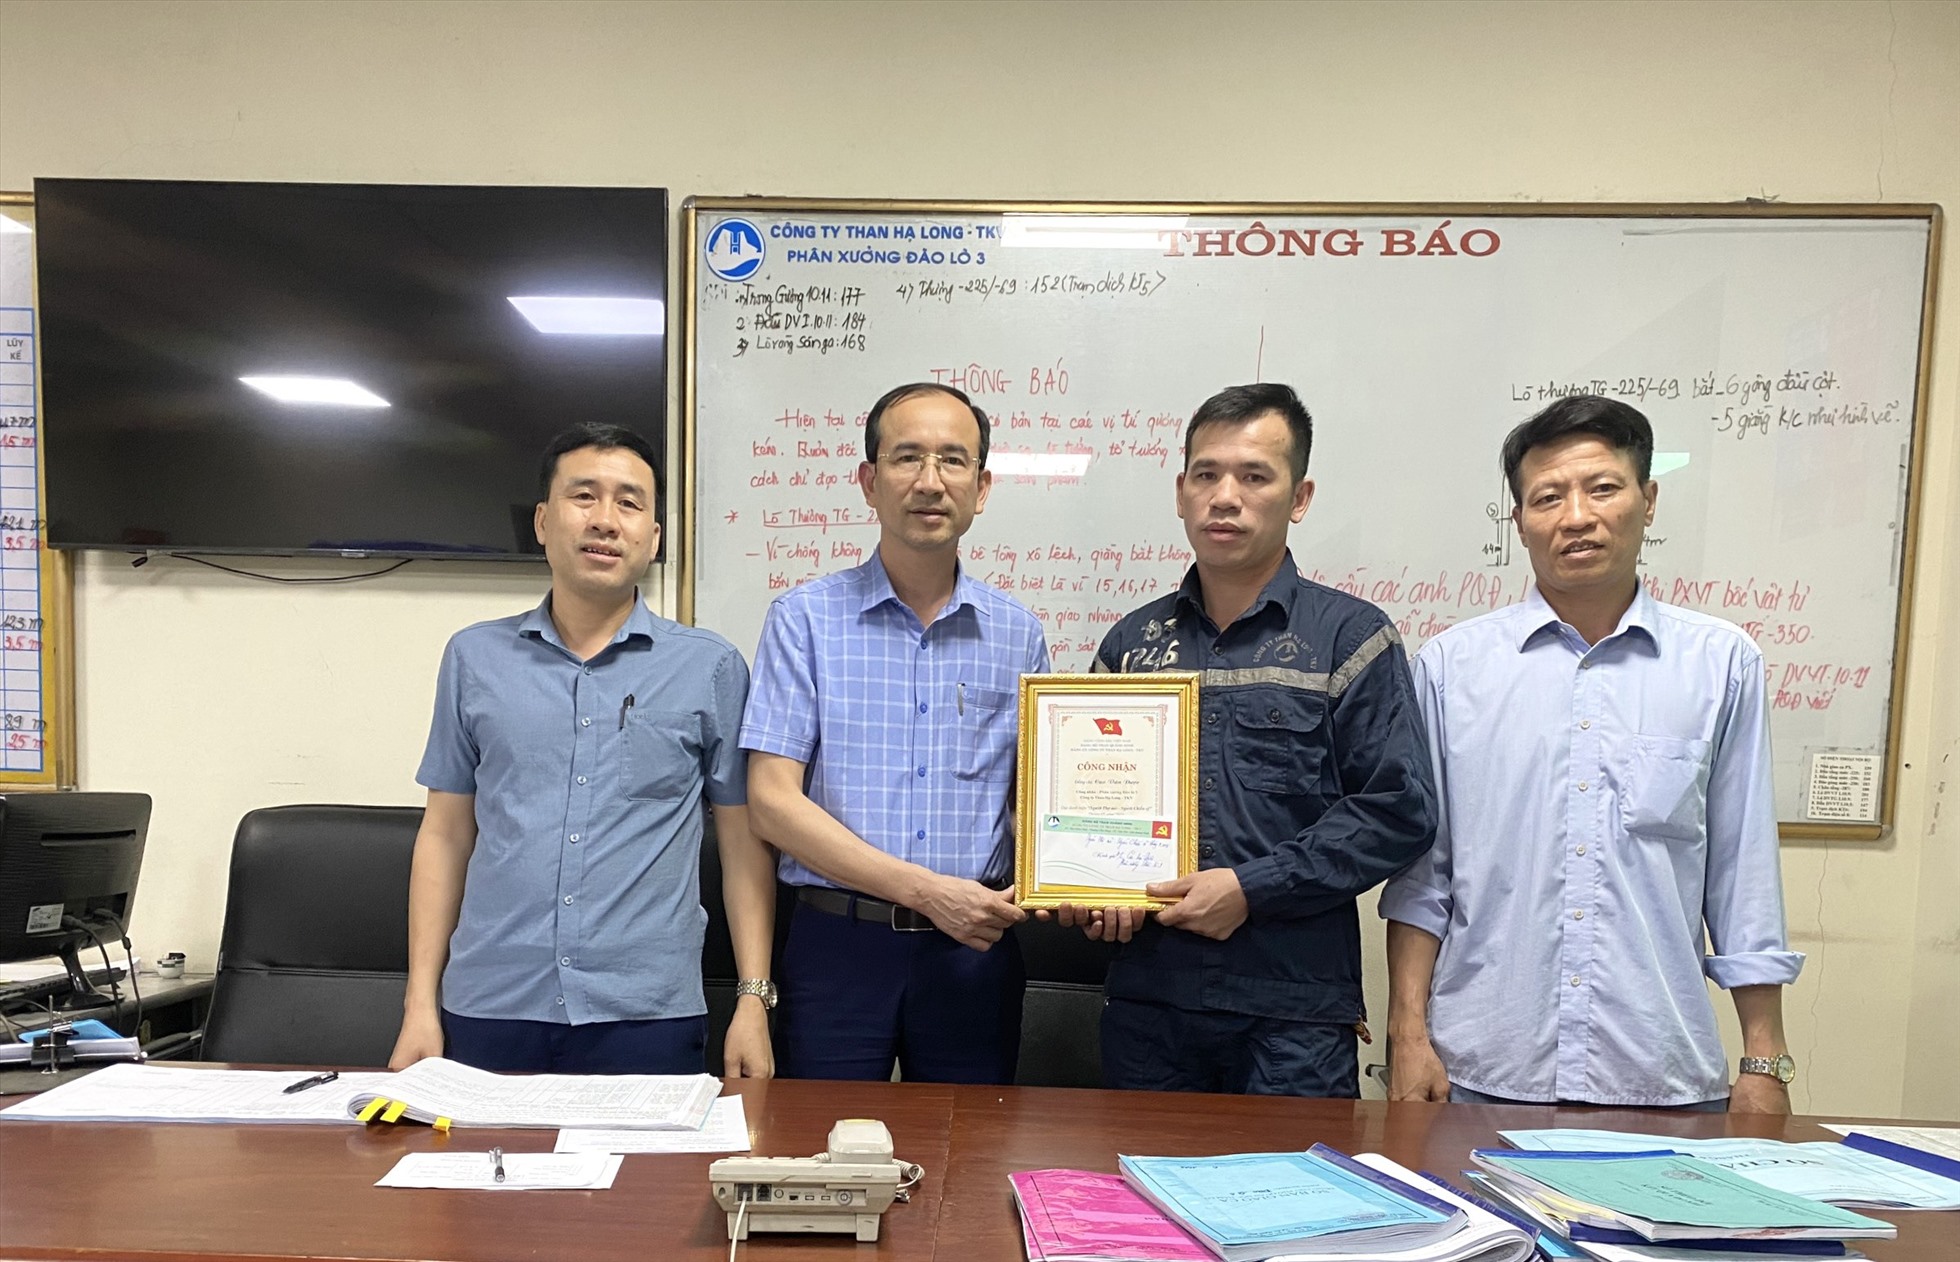 Được sự ủy quyền của Công ty, Lãnh đạo Phân xưởng Đào lò 3 trao danh hiệu “Người Thợ mỏ - Người Chiến sỹ” tháng 5/2023 cho công nhân Cao Văn Được. Ảnh: Công ty Than Hạ Long.